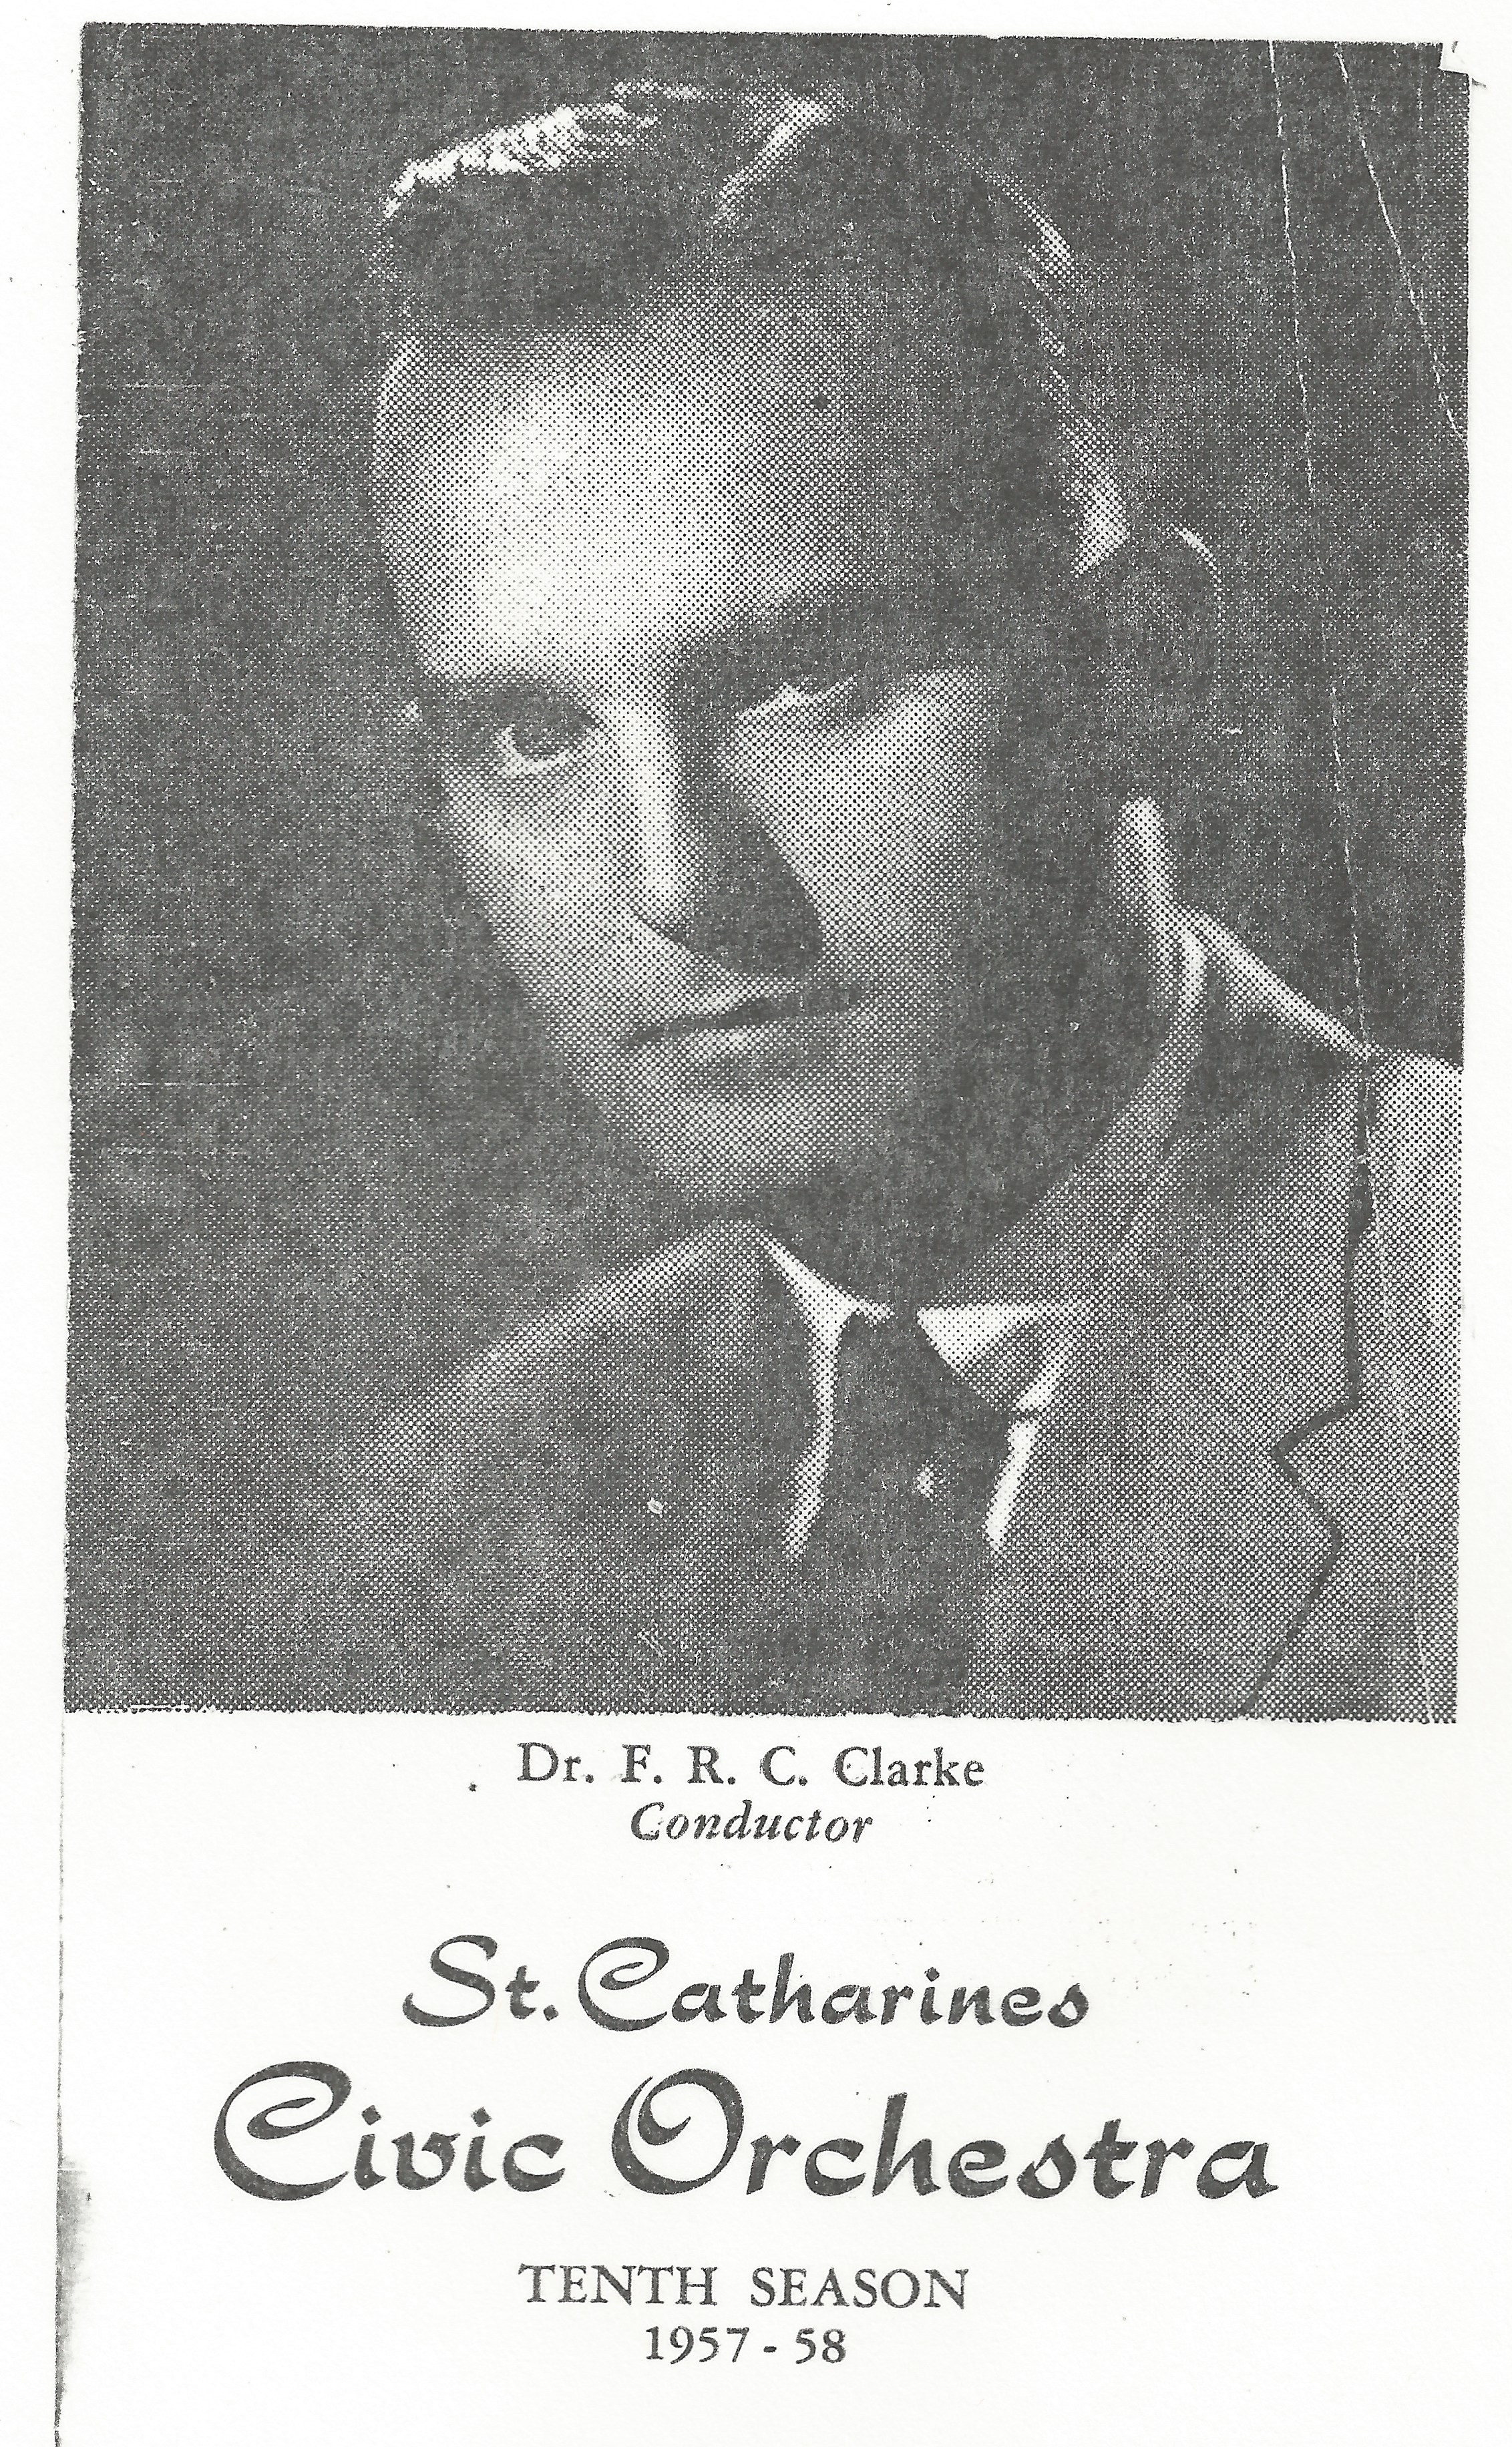 Une photographie du visage de Dr. F. R. C. Clarke